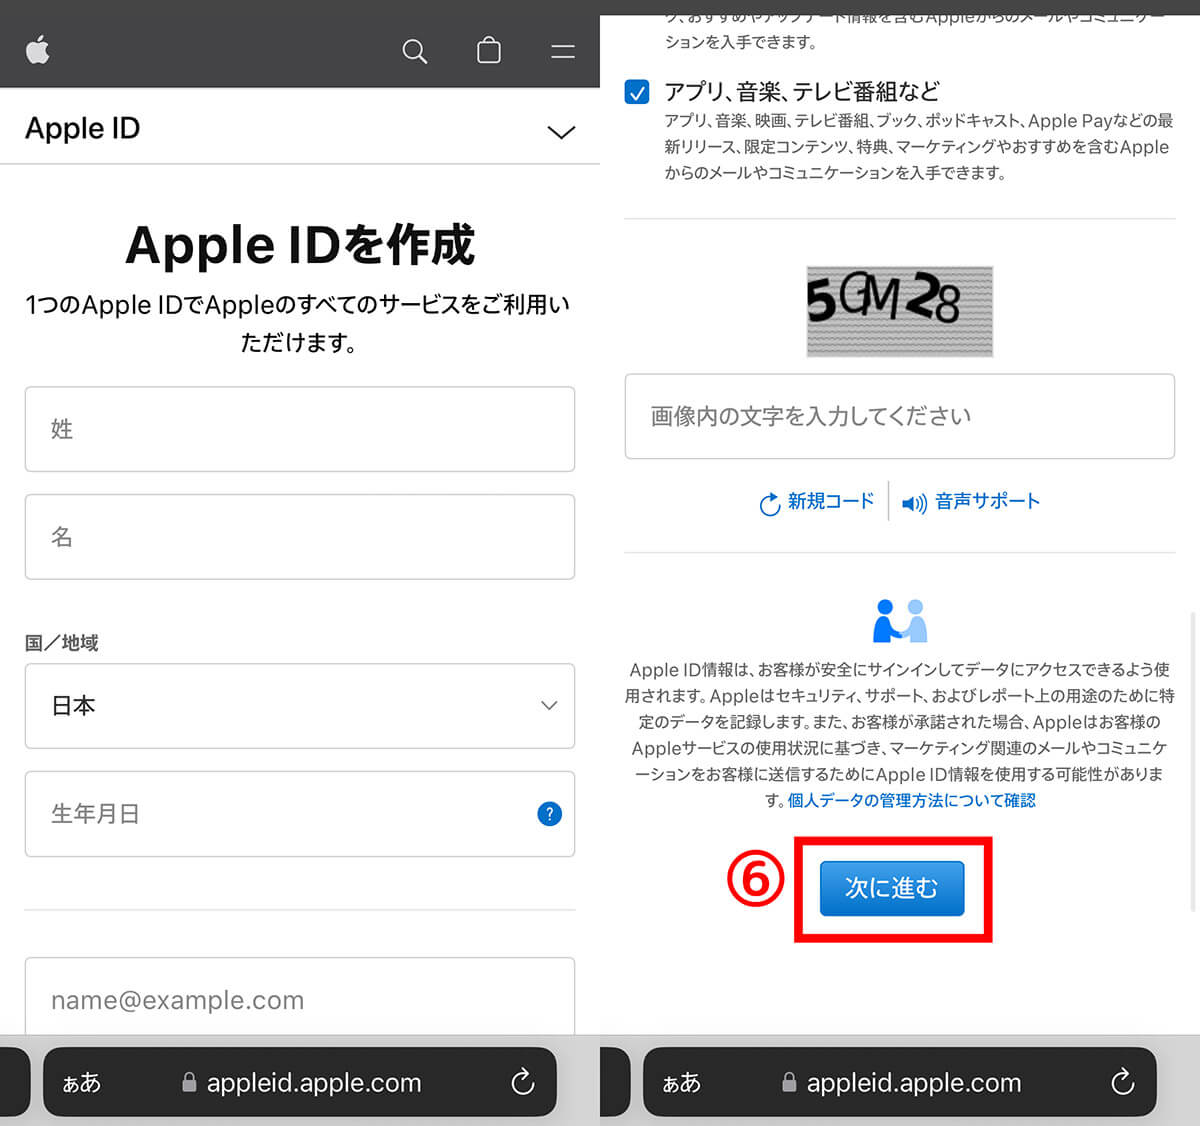 【方法②】Appleの公式サイトでApple IDを複数作成する場合3